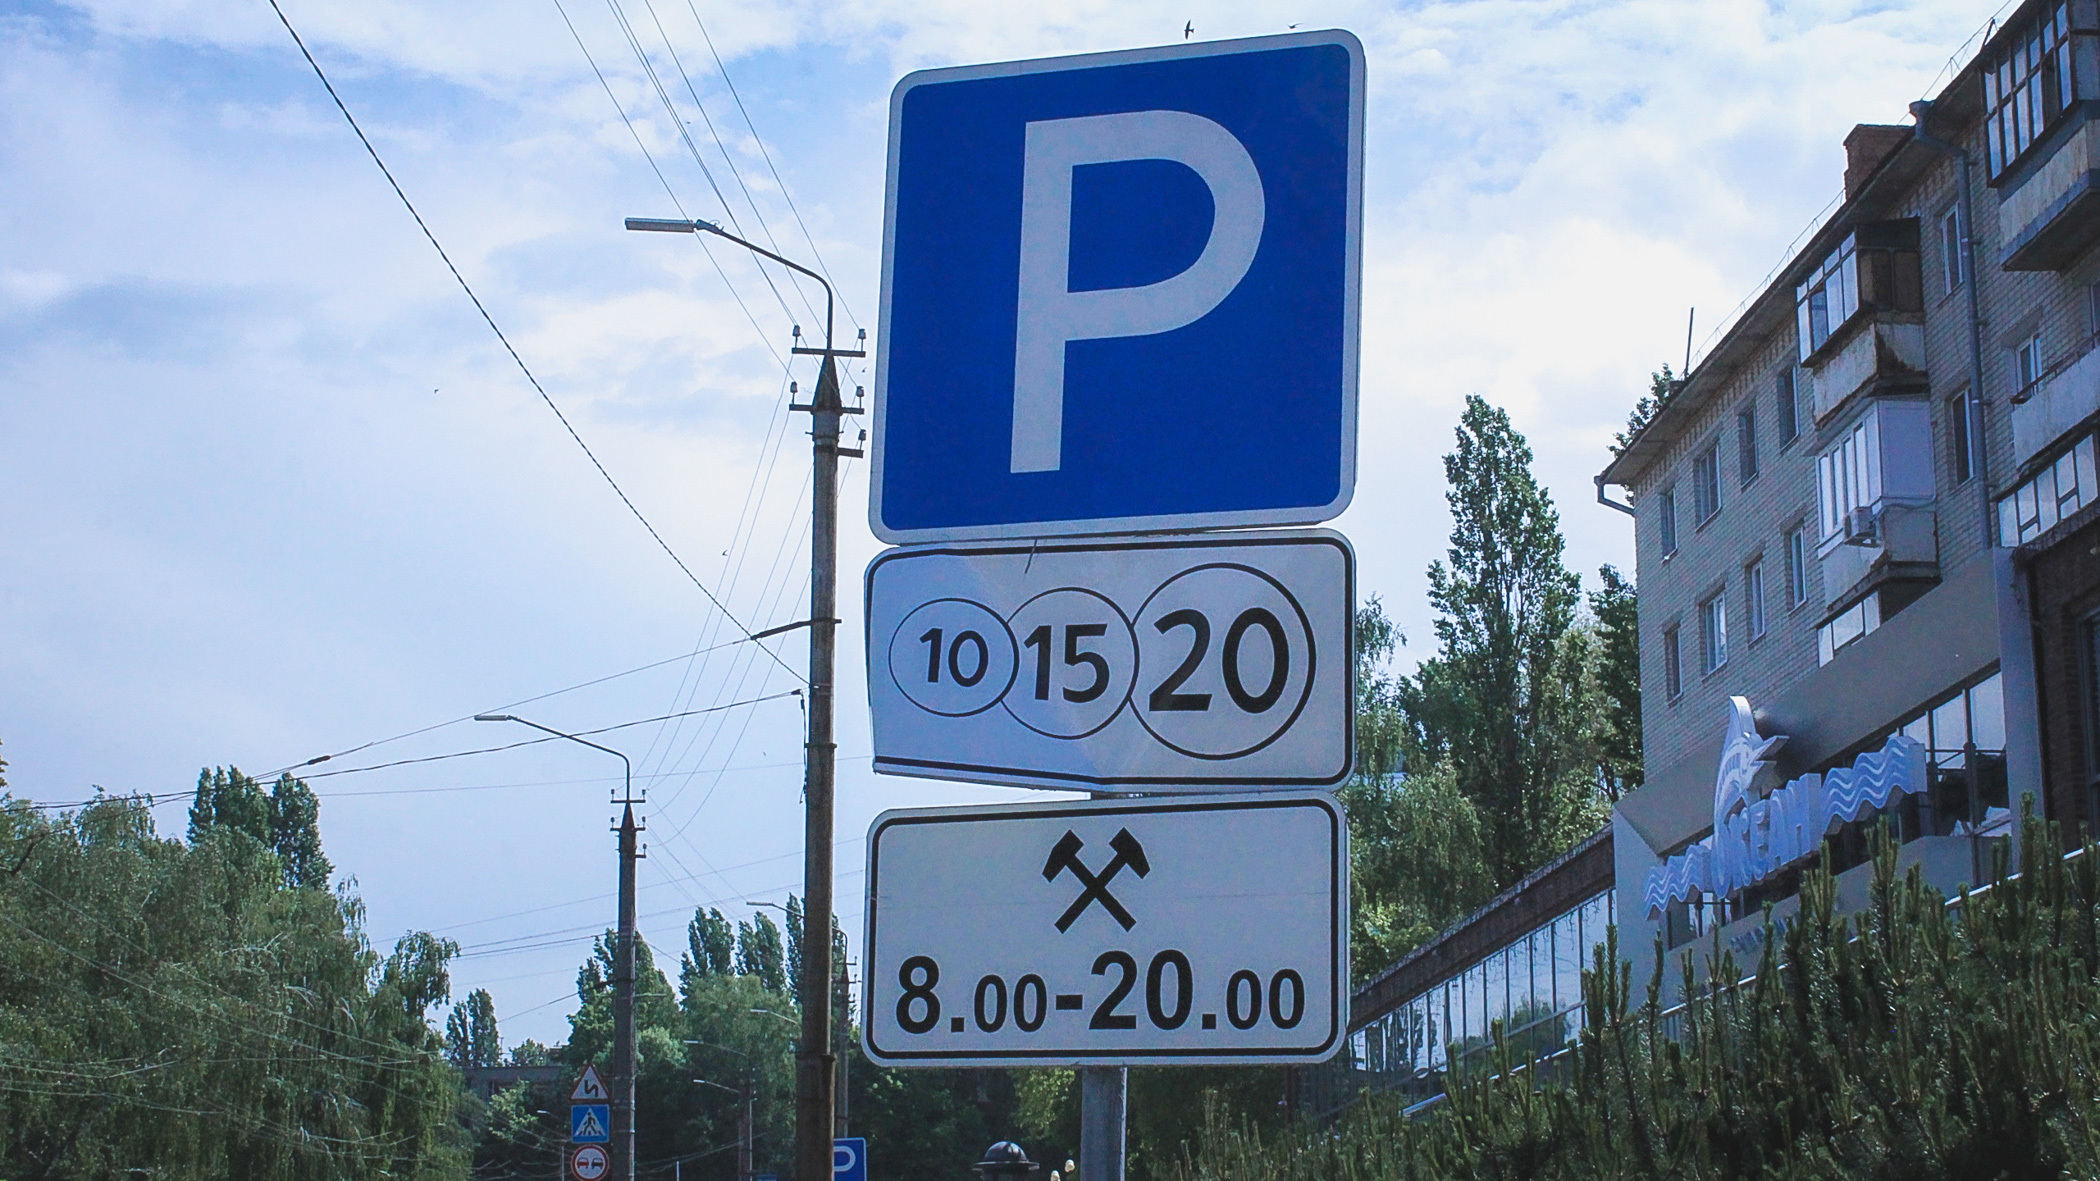 Бизнес-центр на Карла Маркса в Новосибирске лишился парковки